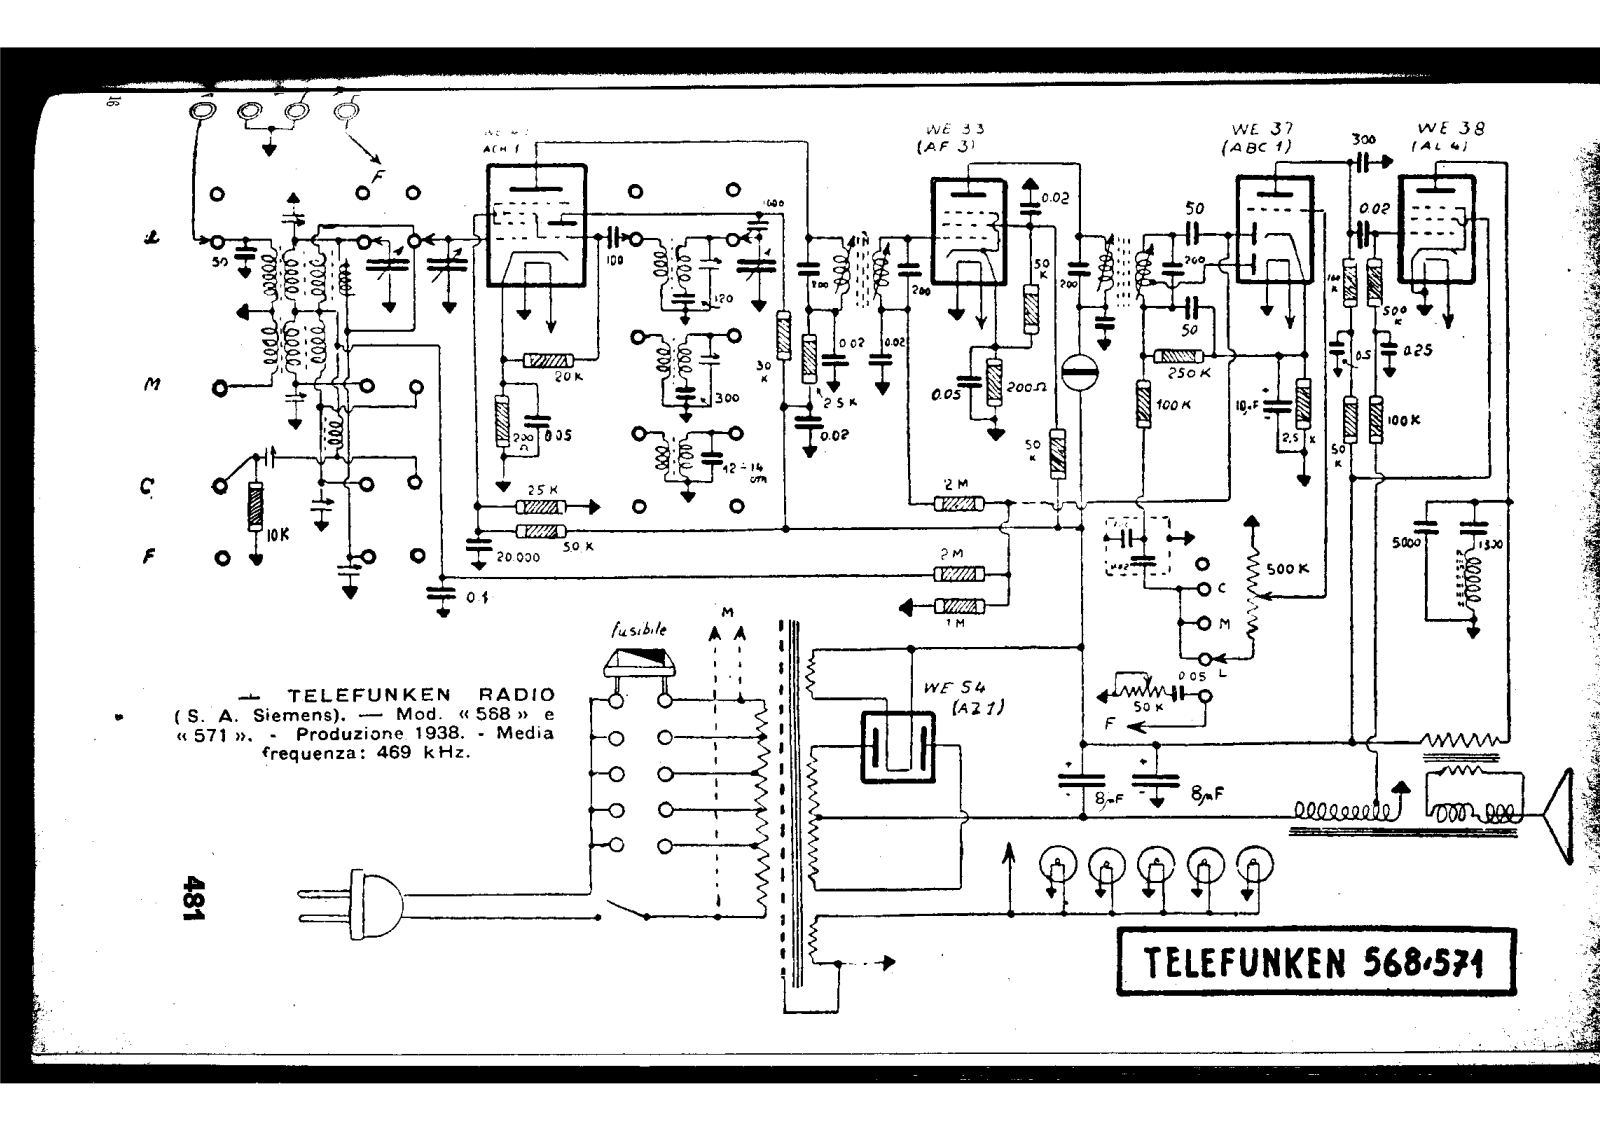 Siemens t568, t571 schematic